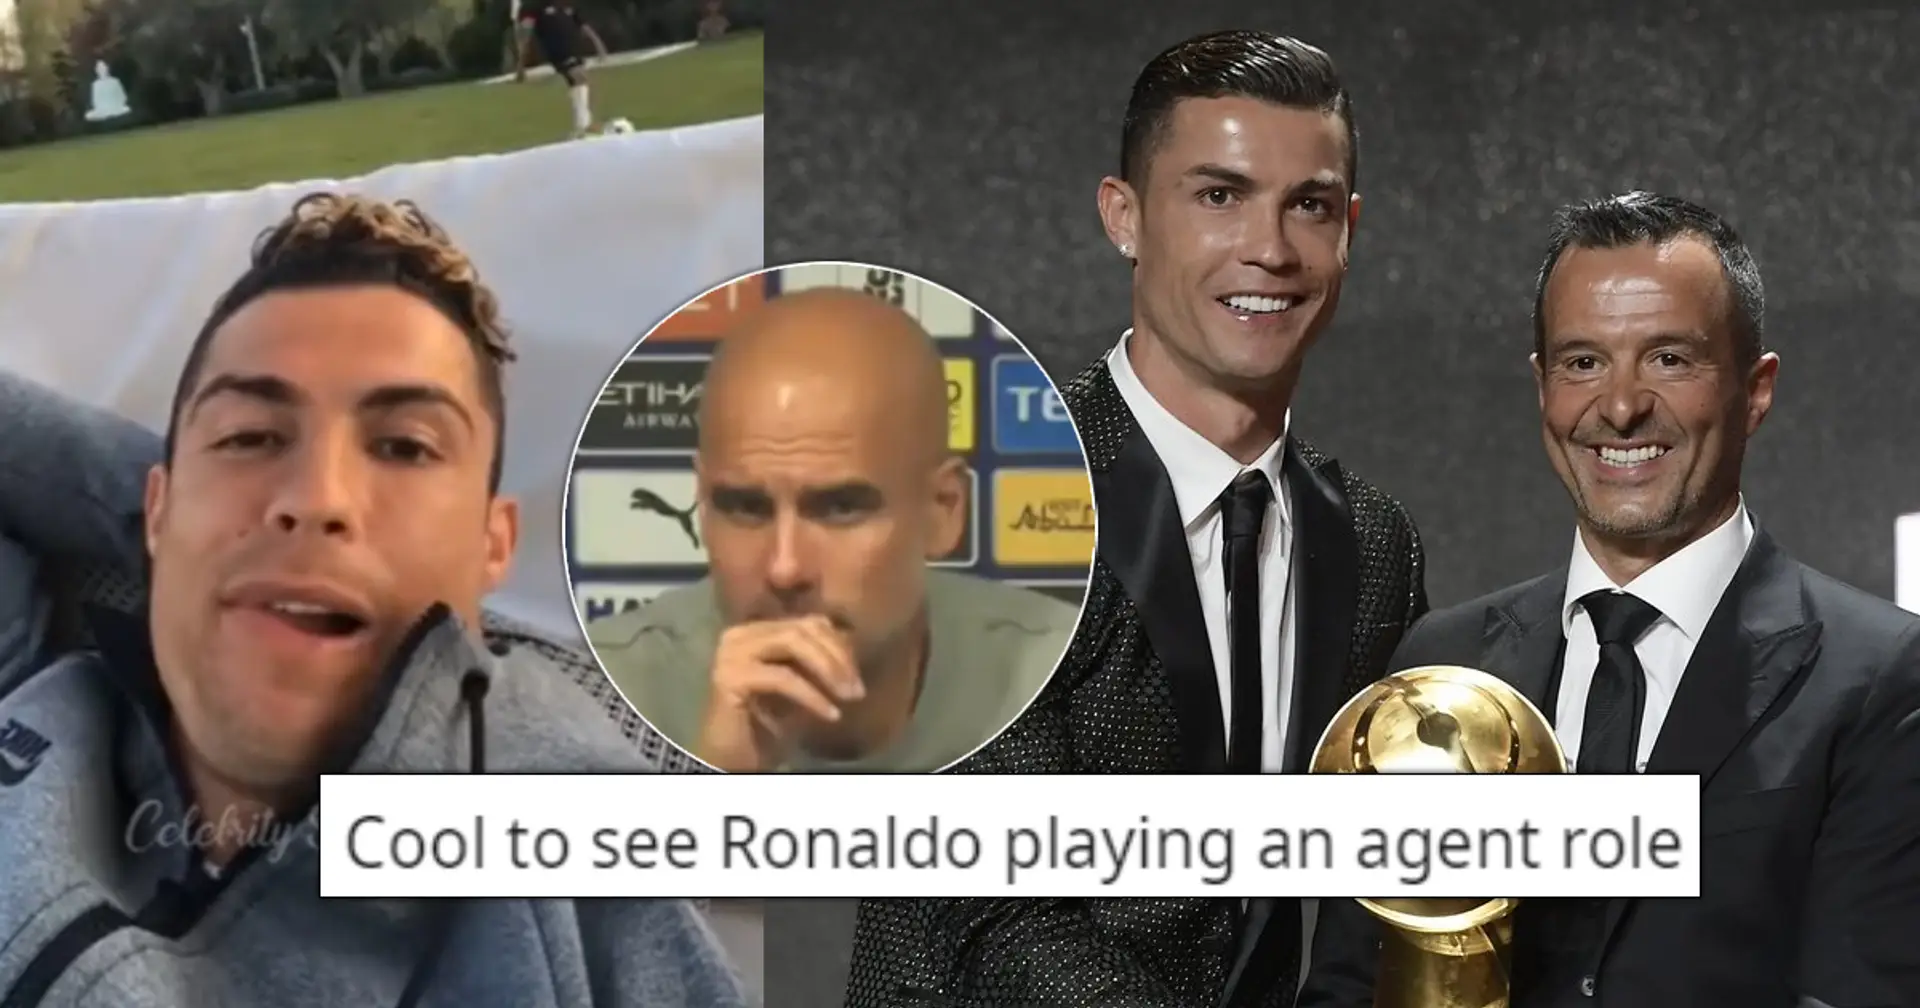 Geleaktes Audio von Cristiano Ronaldo enthüllt Details seiner Wahl zwischen City und United